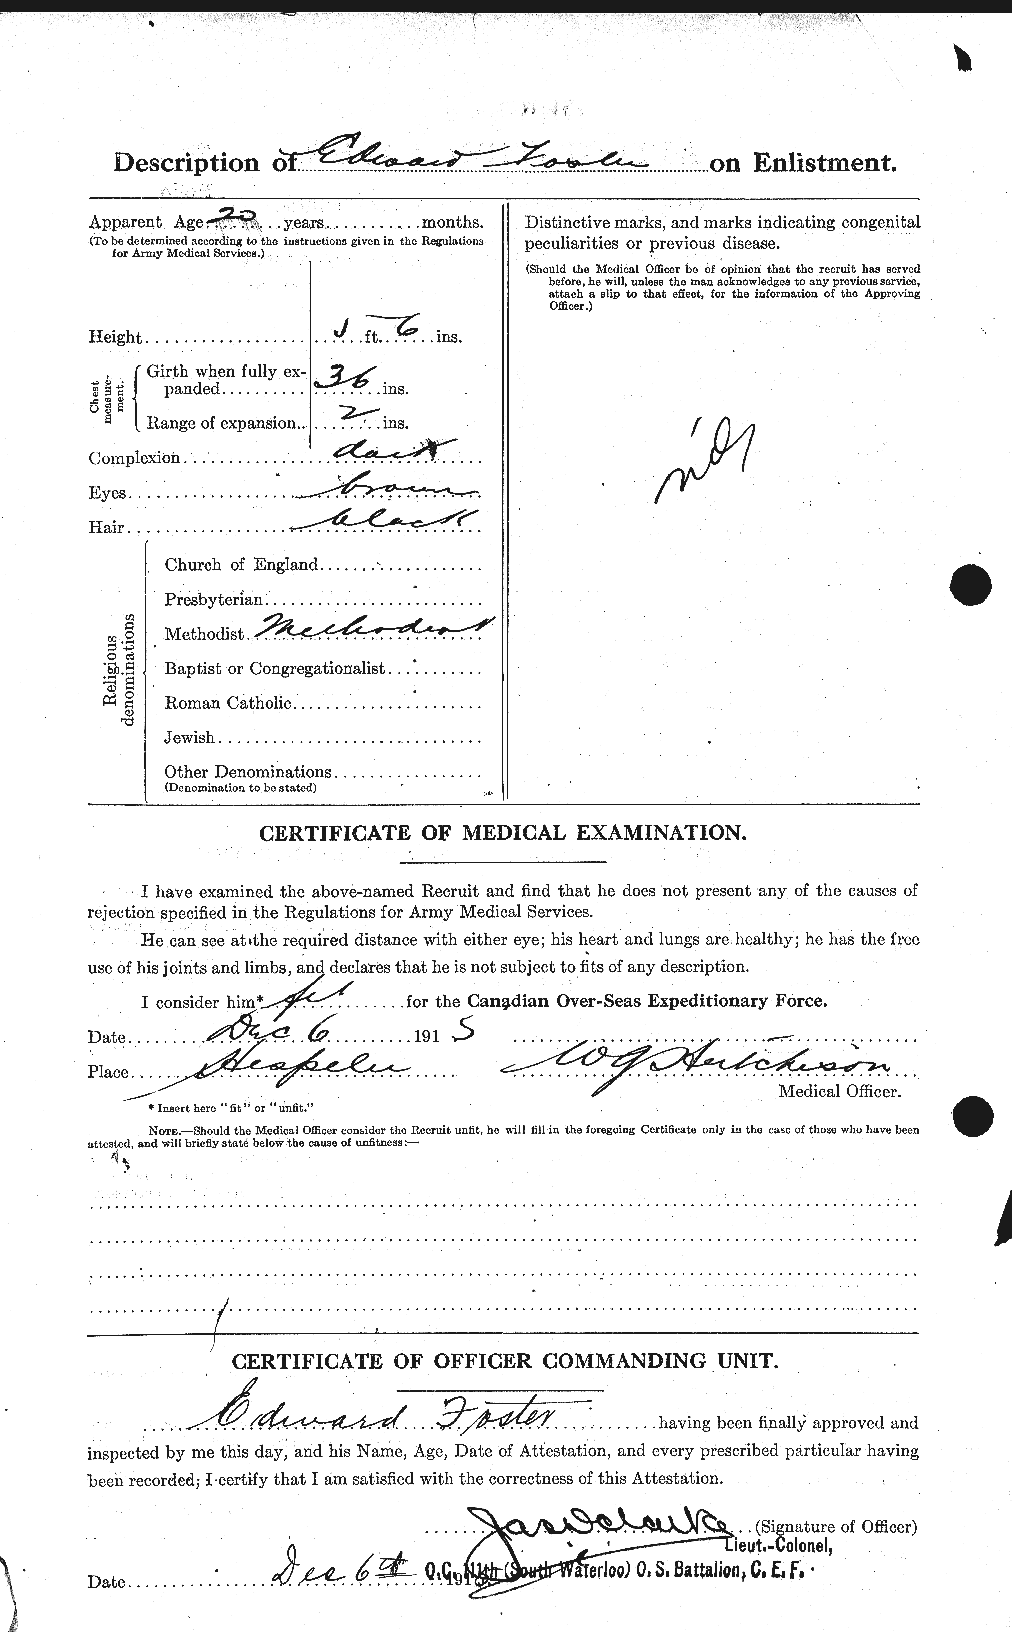 Dossiers du Personnel de la Première Guerre mondiale - CEC 330577b